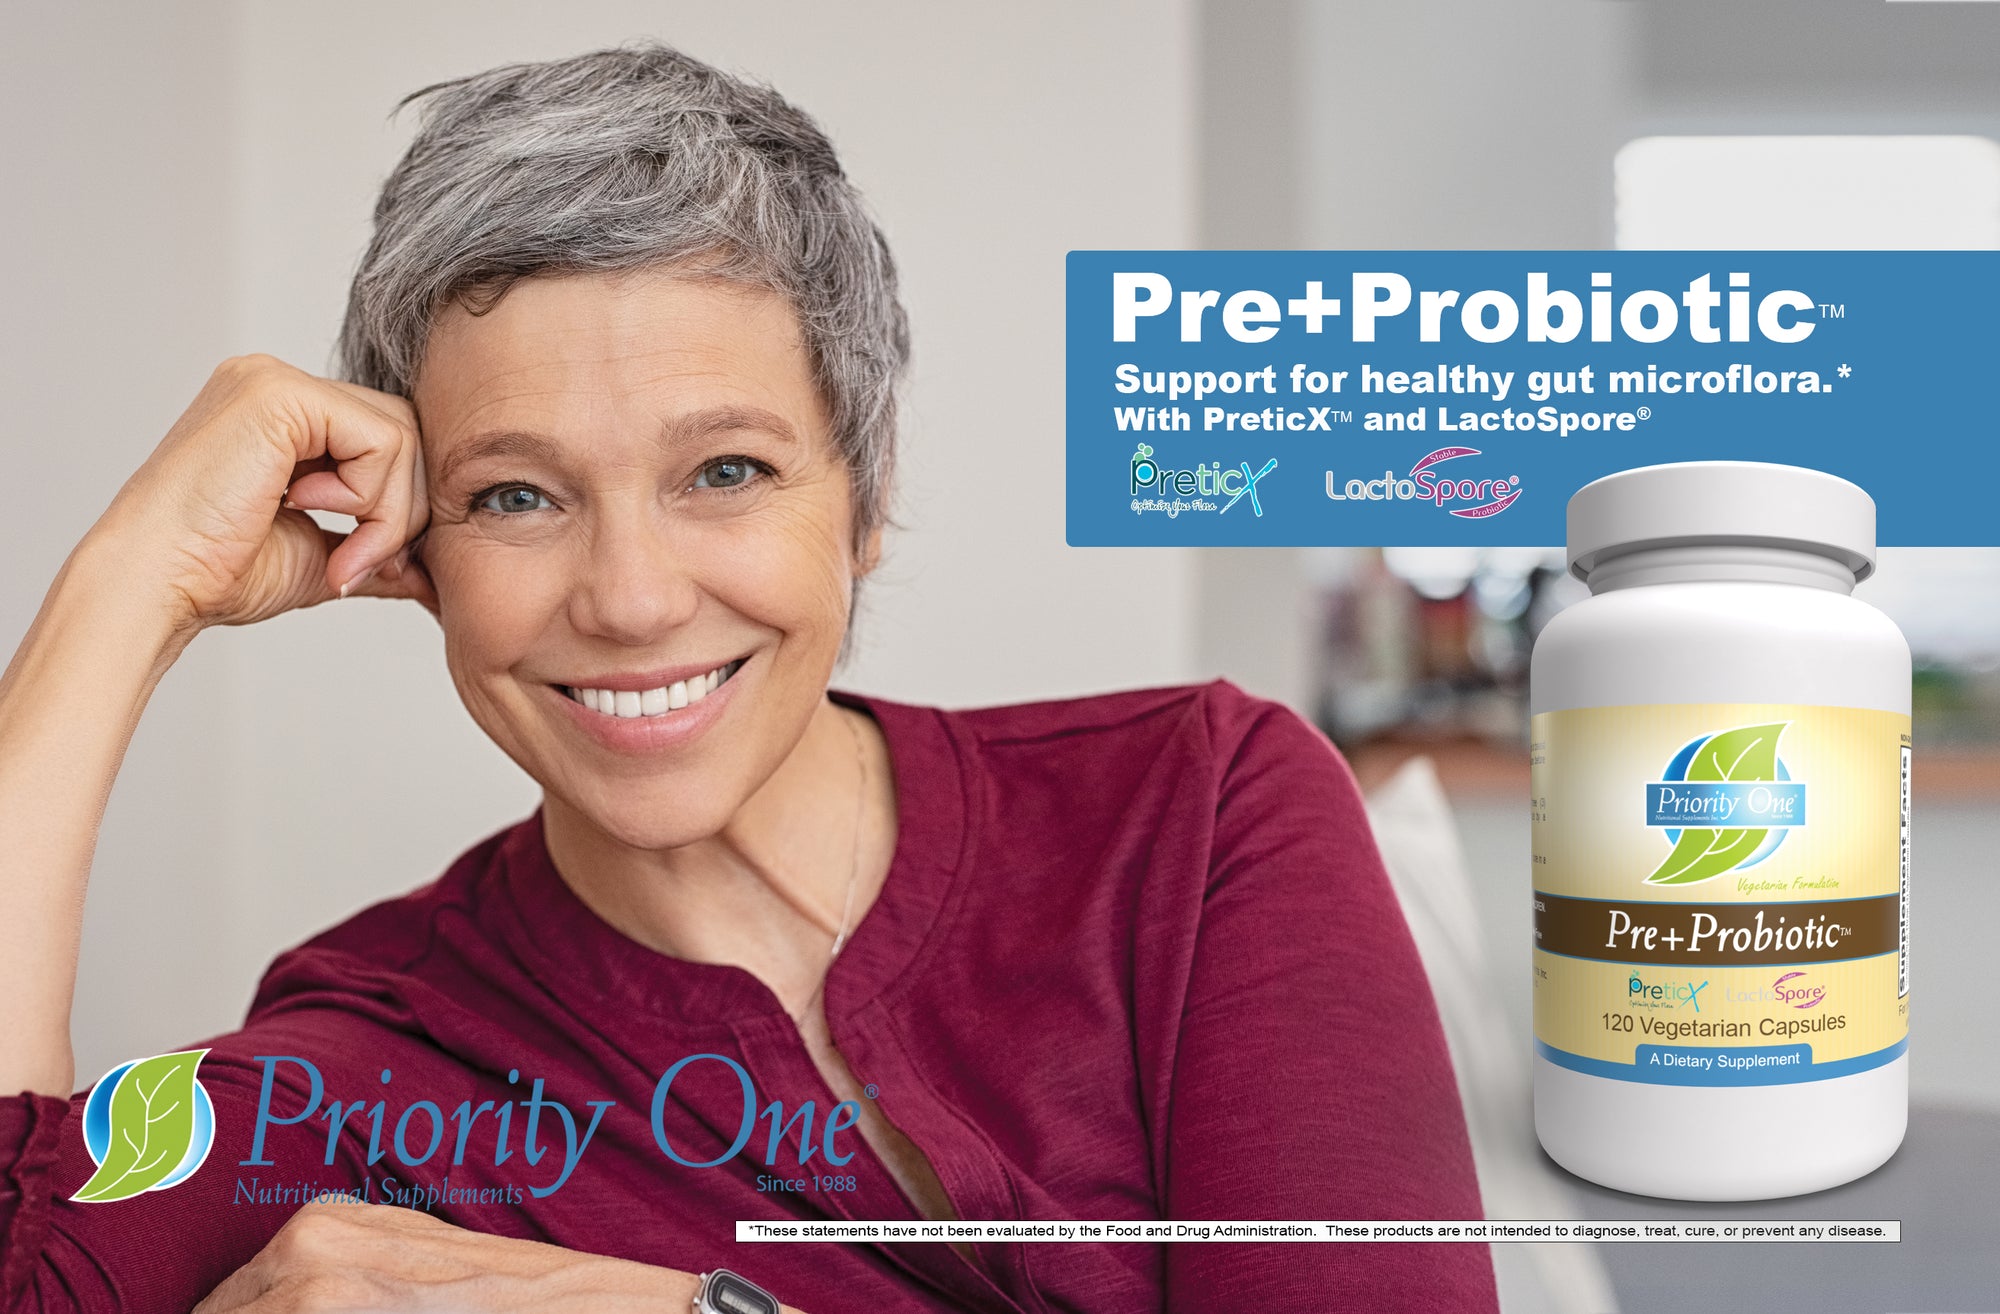 Pre+Probiótico (120 cápsulas vegetarianas) Las cápsulas de pre+probiótico apoyan la microflora intestinal saludable.*